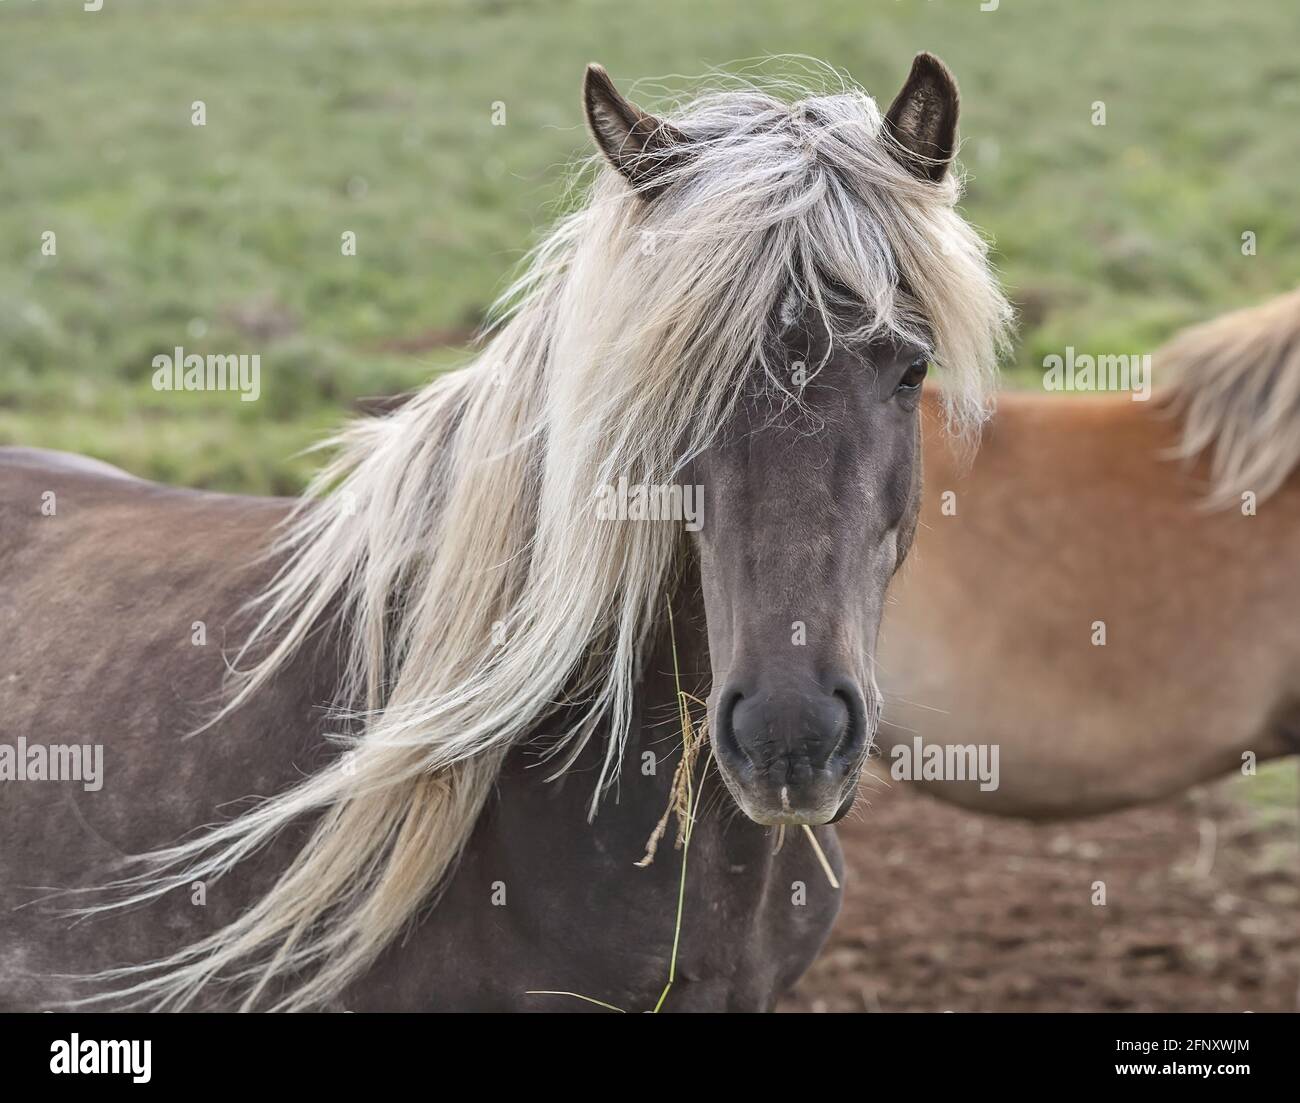 Schönes und einzigartiges isländisches Pferd mit dunklem Fell und blonder Mähne. Kamera in einer ruhigen Pose gegenüberstellen. Island. Stockfoto